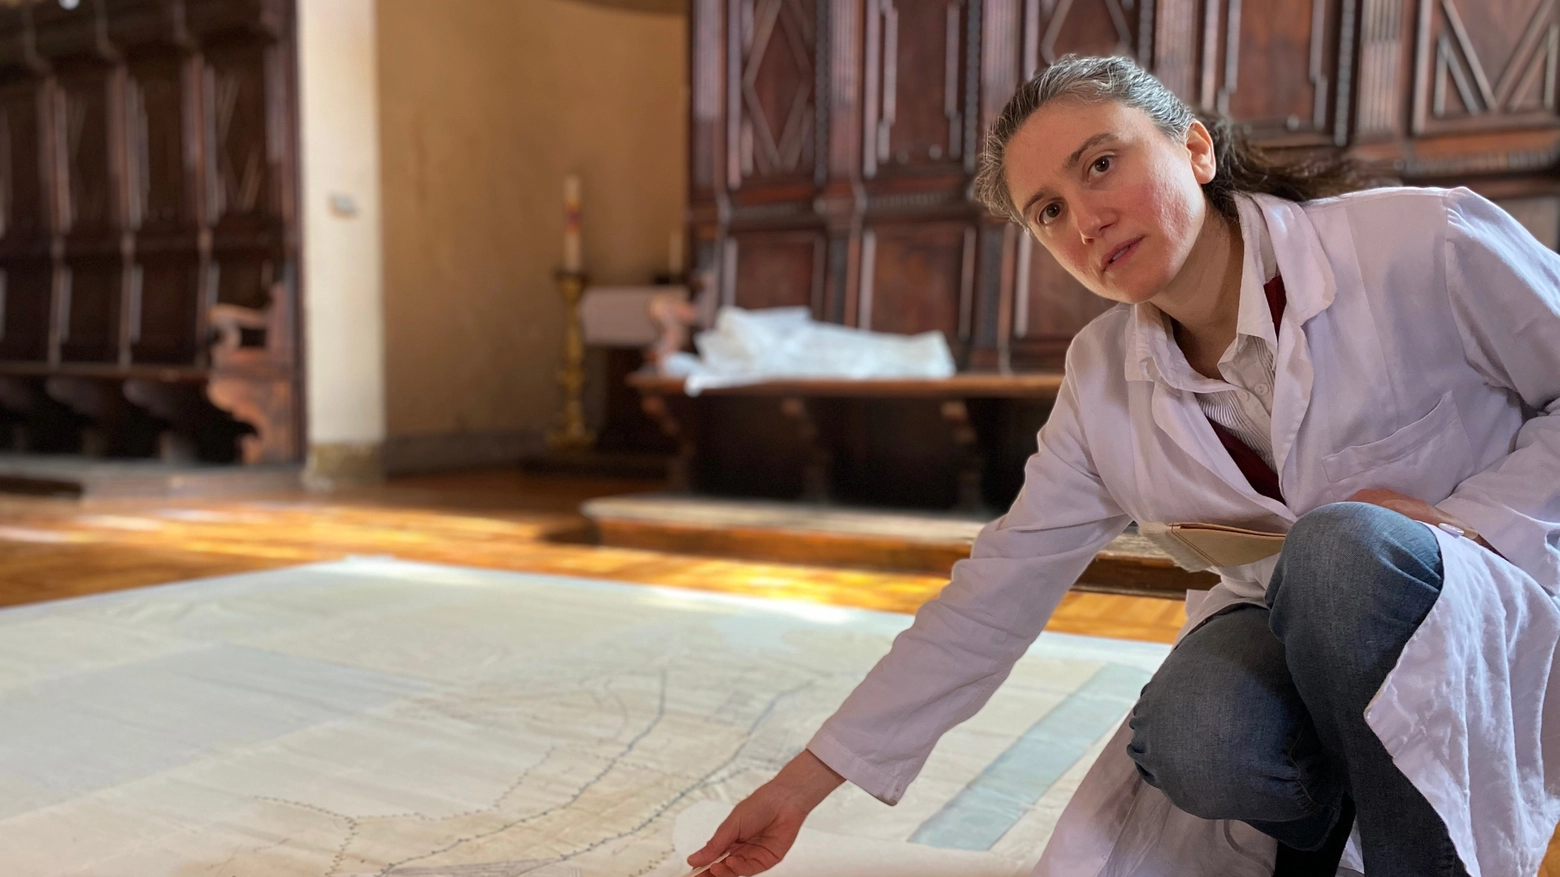 Nel 2019 due ricercatori hanno scoperto nell'Archivio di Stato una gigantesca mappa della Riviera, lunga più di quattro metri e larga due. Restaurata, l'opera ci racconta una Cesenatico inedita, e con le sue saline, come Cervia